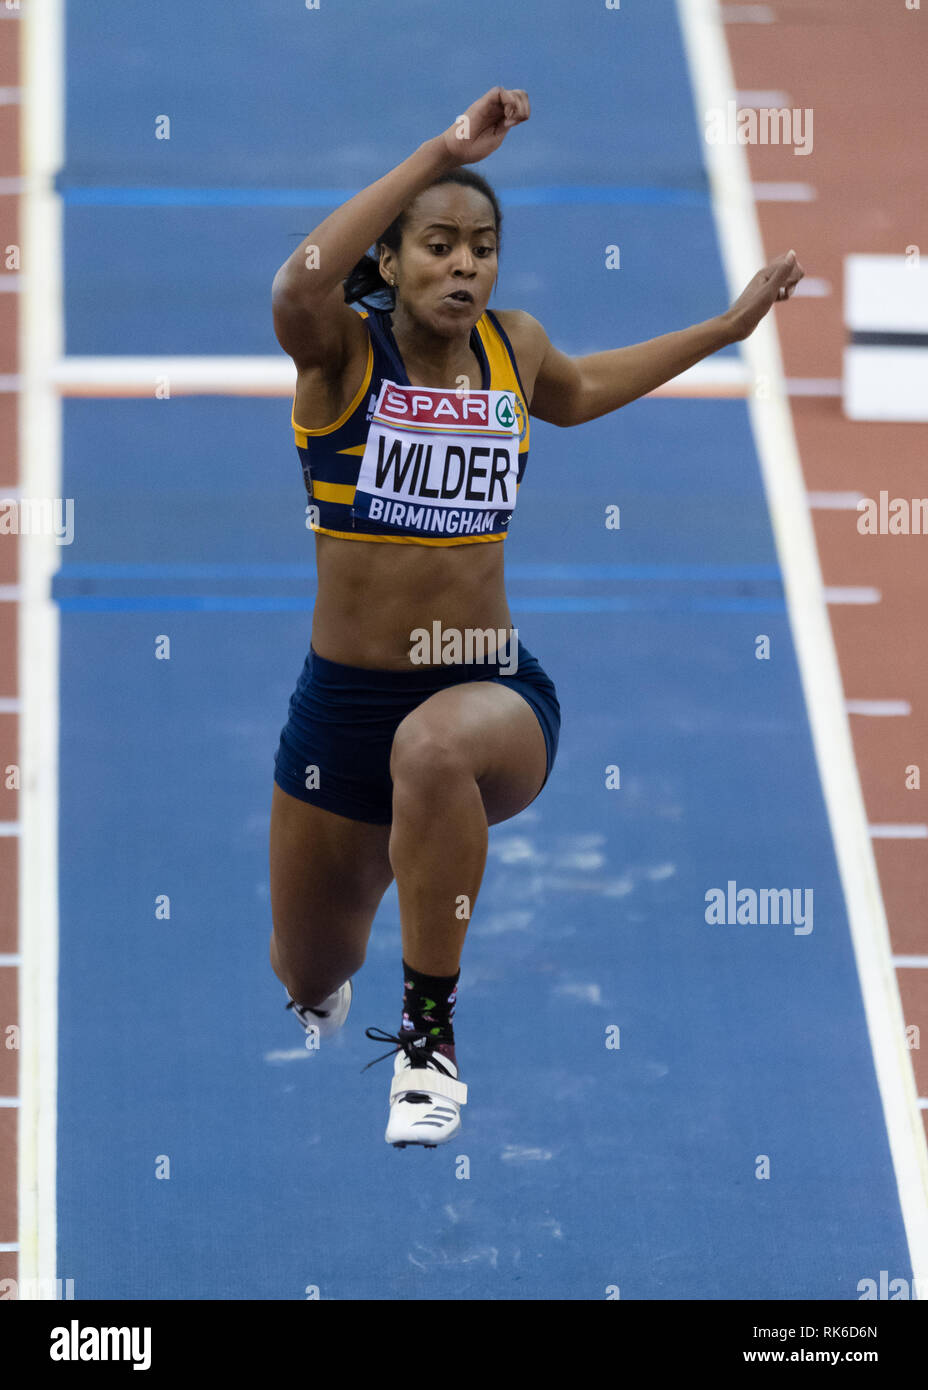 Birmingham, UK. 9th Feb 2019. Allison Wilder in Women Triple Jump